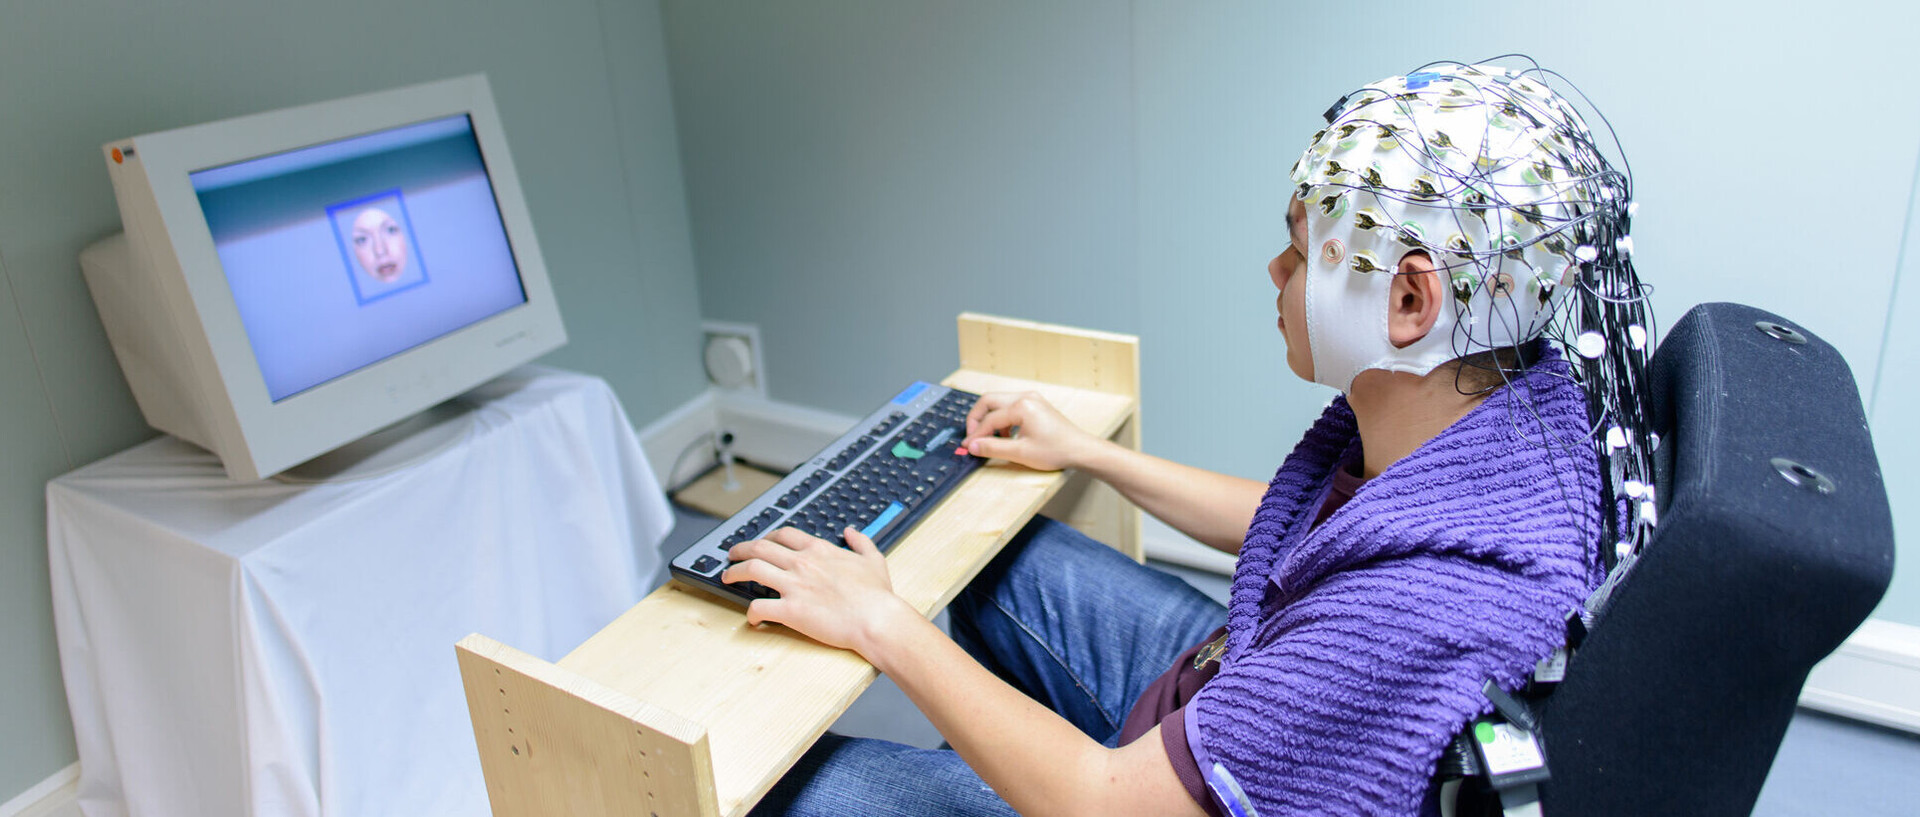 Eine Person trägt eine Haube mit Elektroden auf dem Kopf. Sie sitzt an einer Tastatur vor einem Monitor.